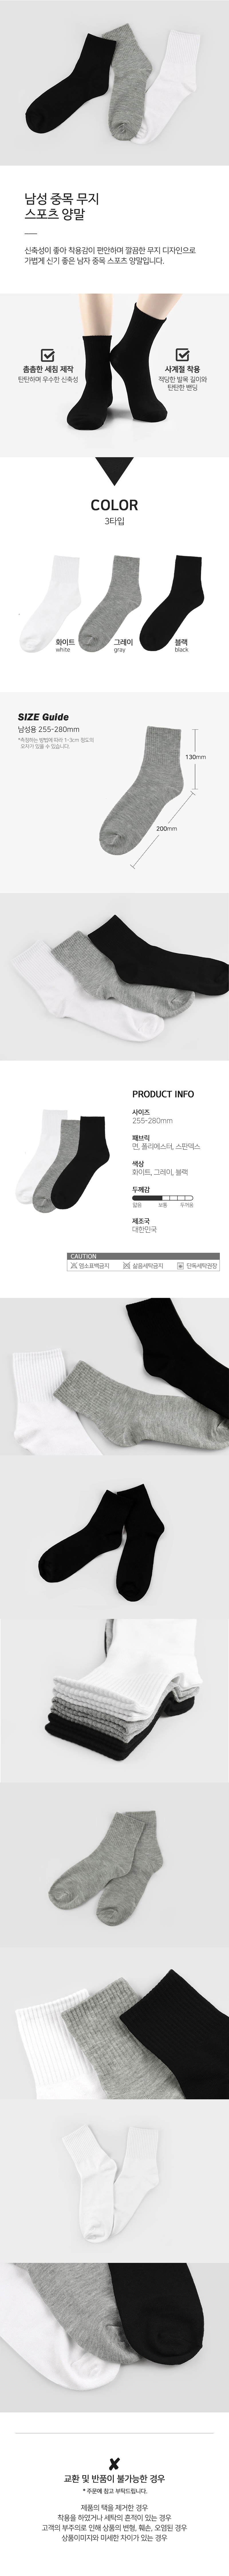 socks_00102.jpg